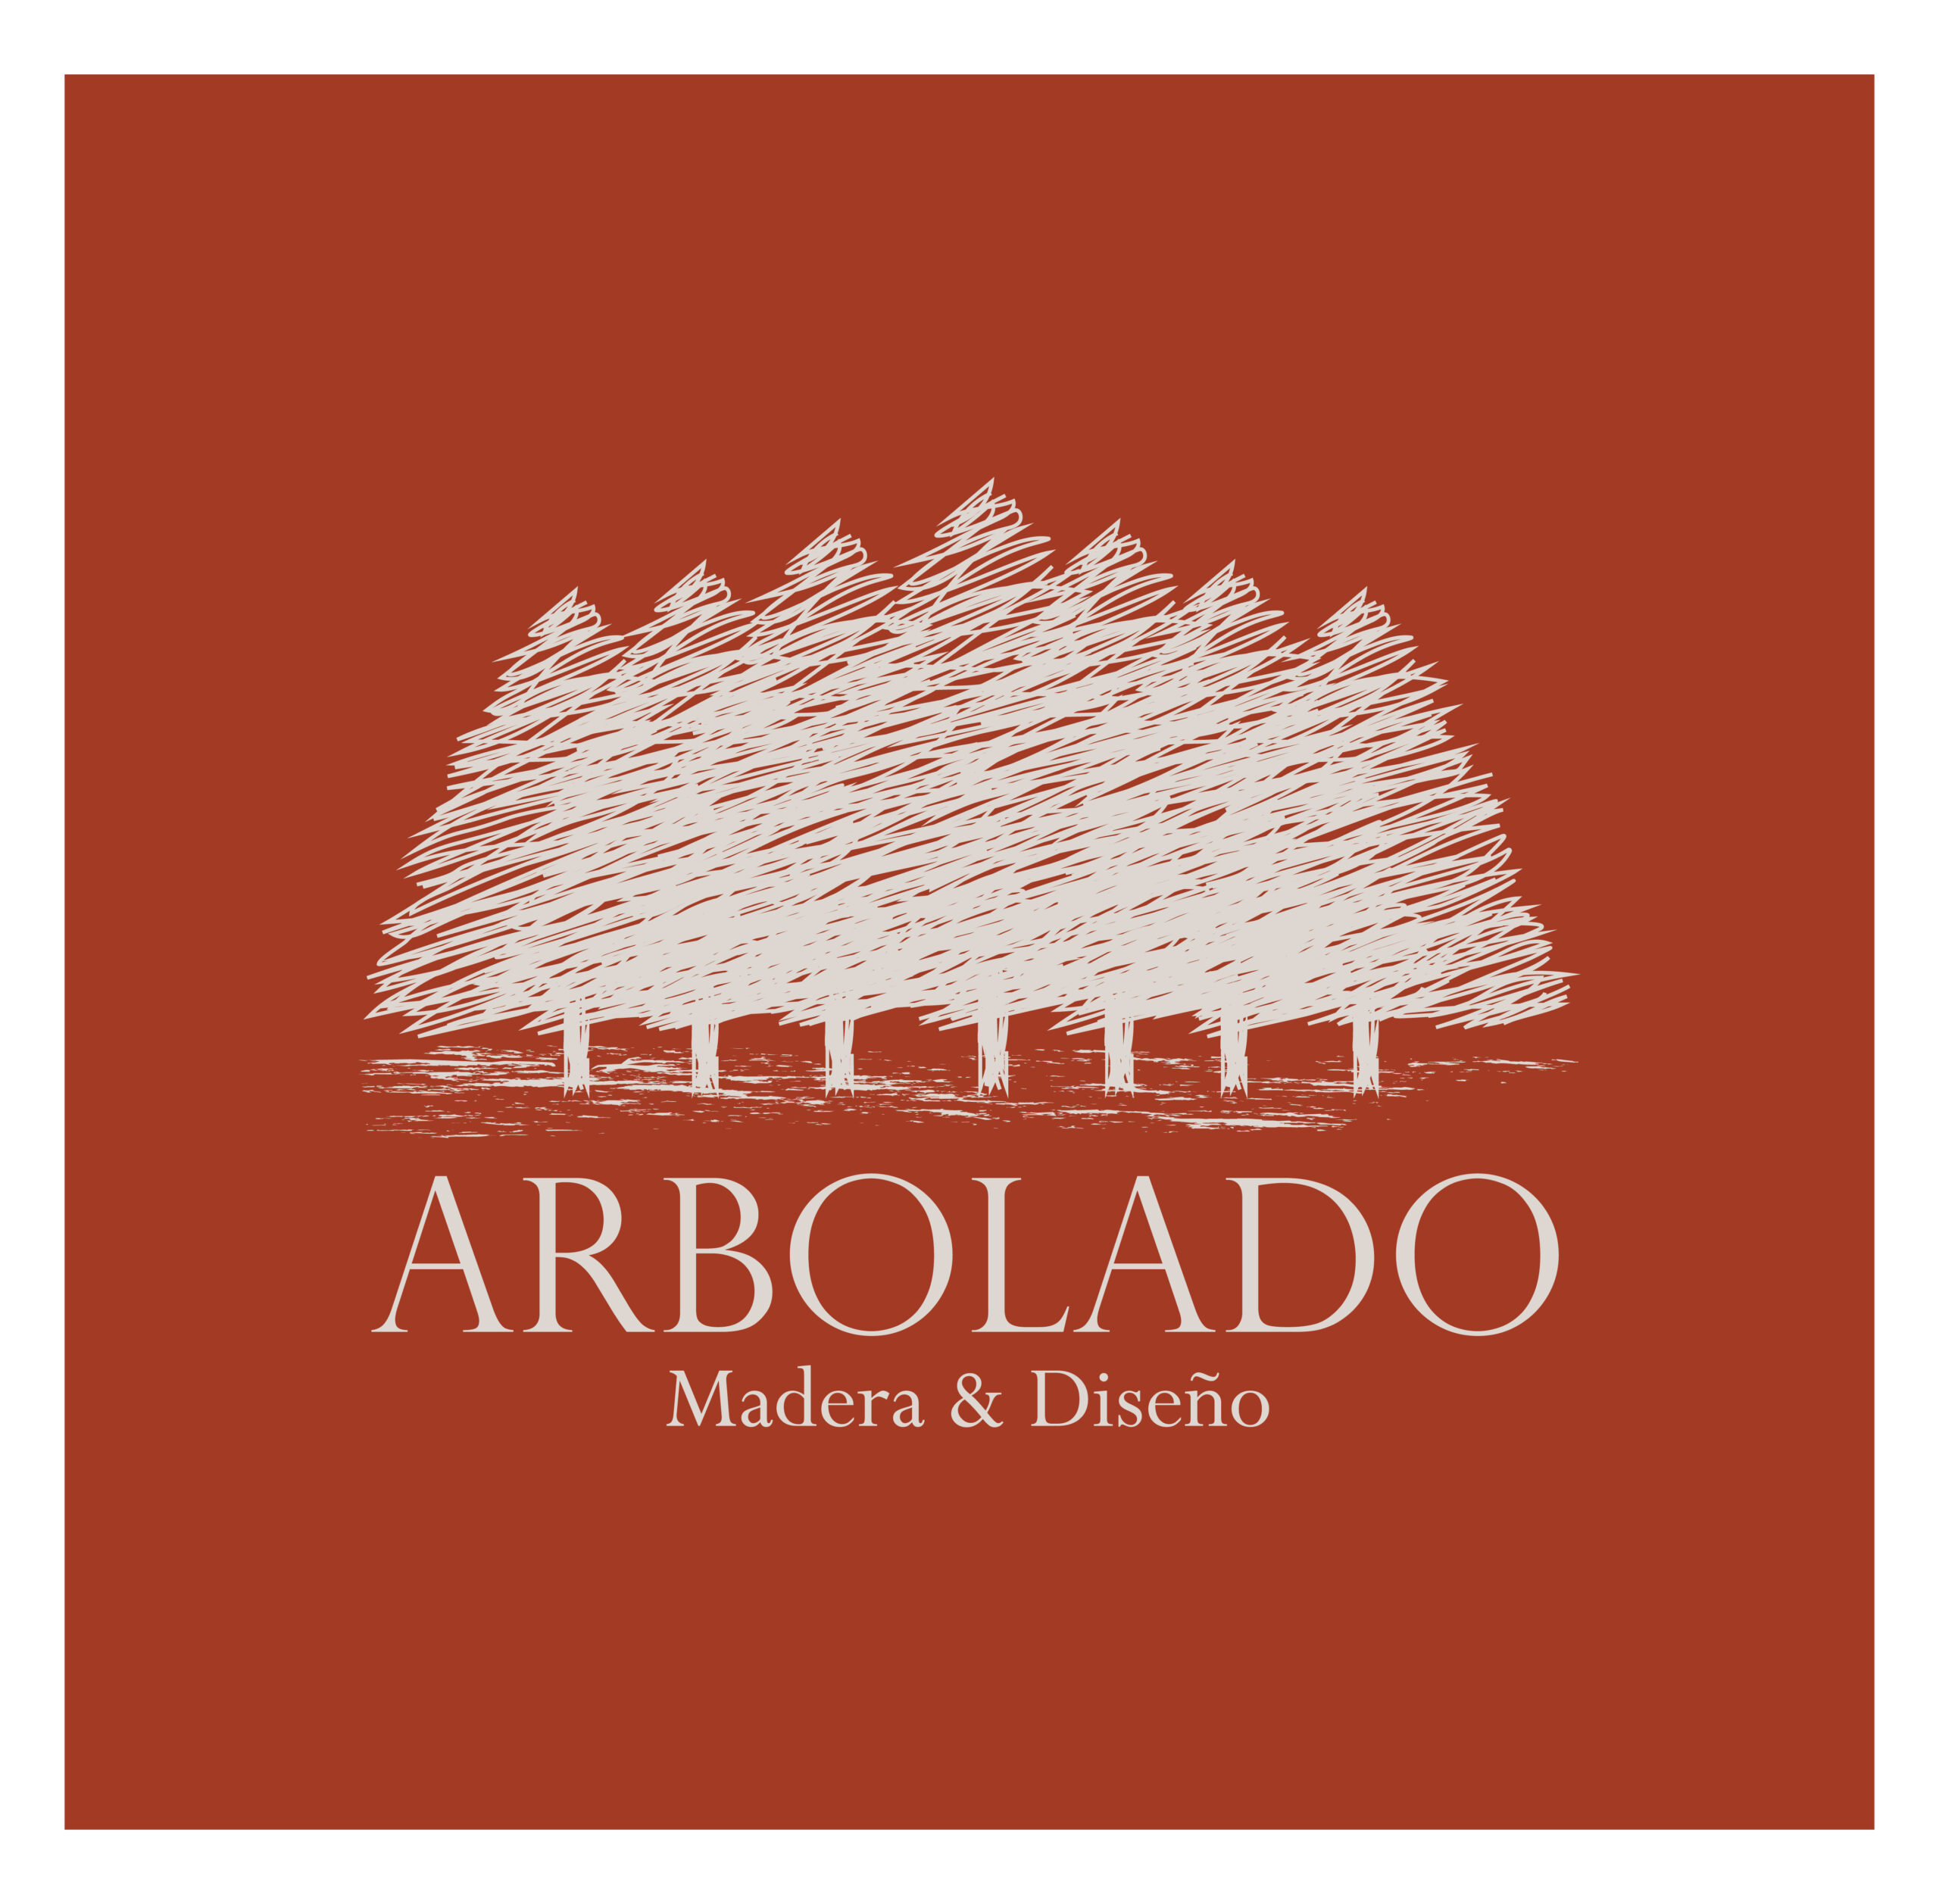 Propuesta de Logo y tipografías Arbolado-11